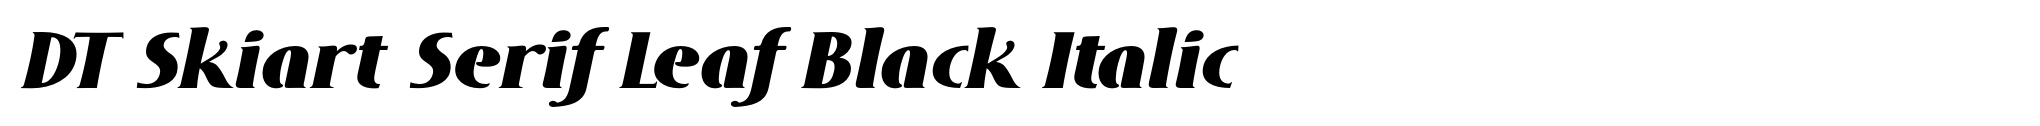 DT Skiart Serif Leaf Black Italic image